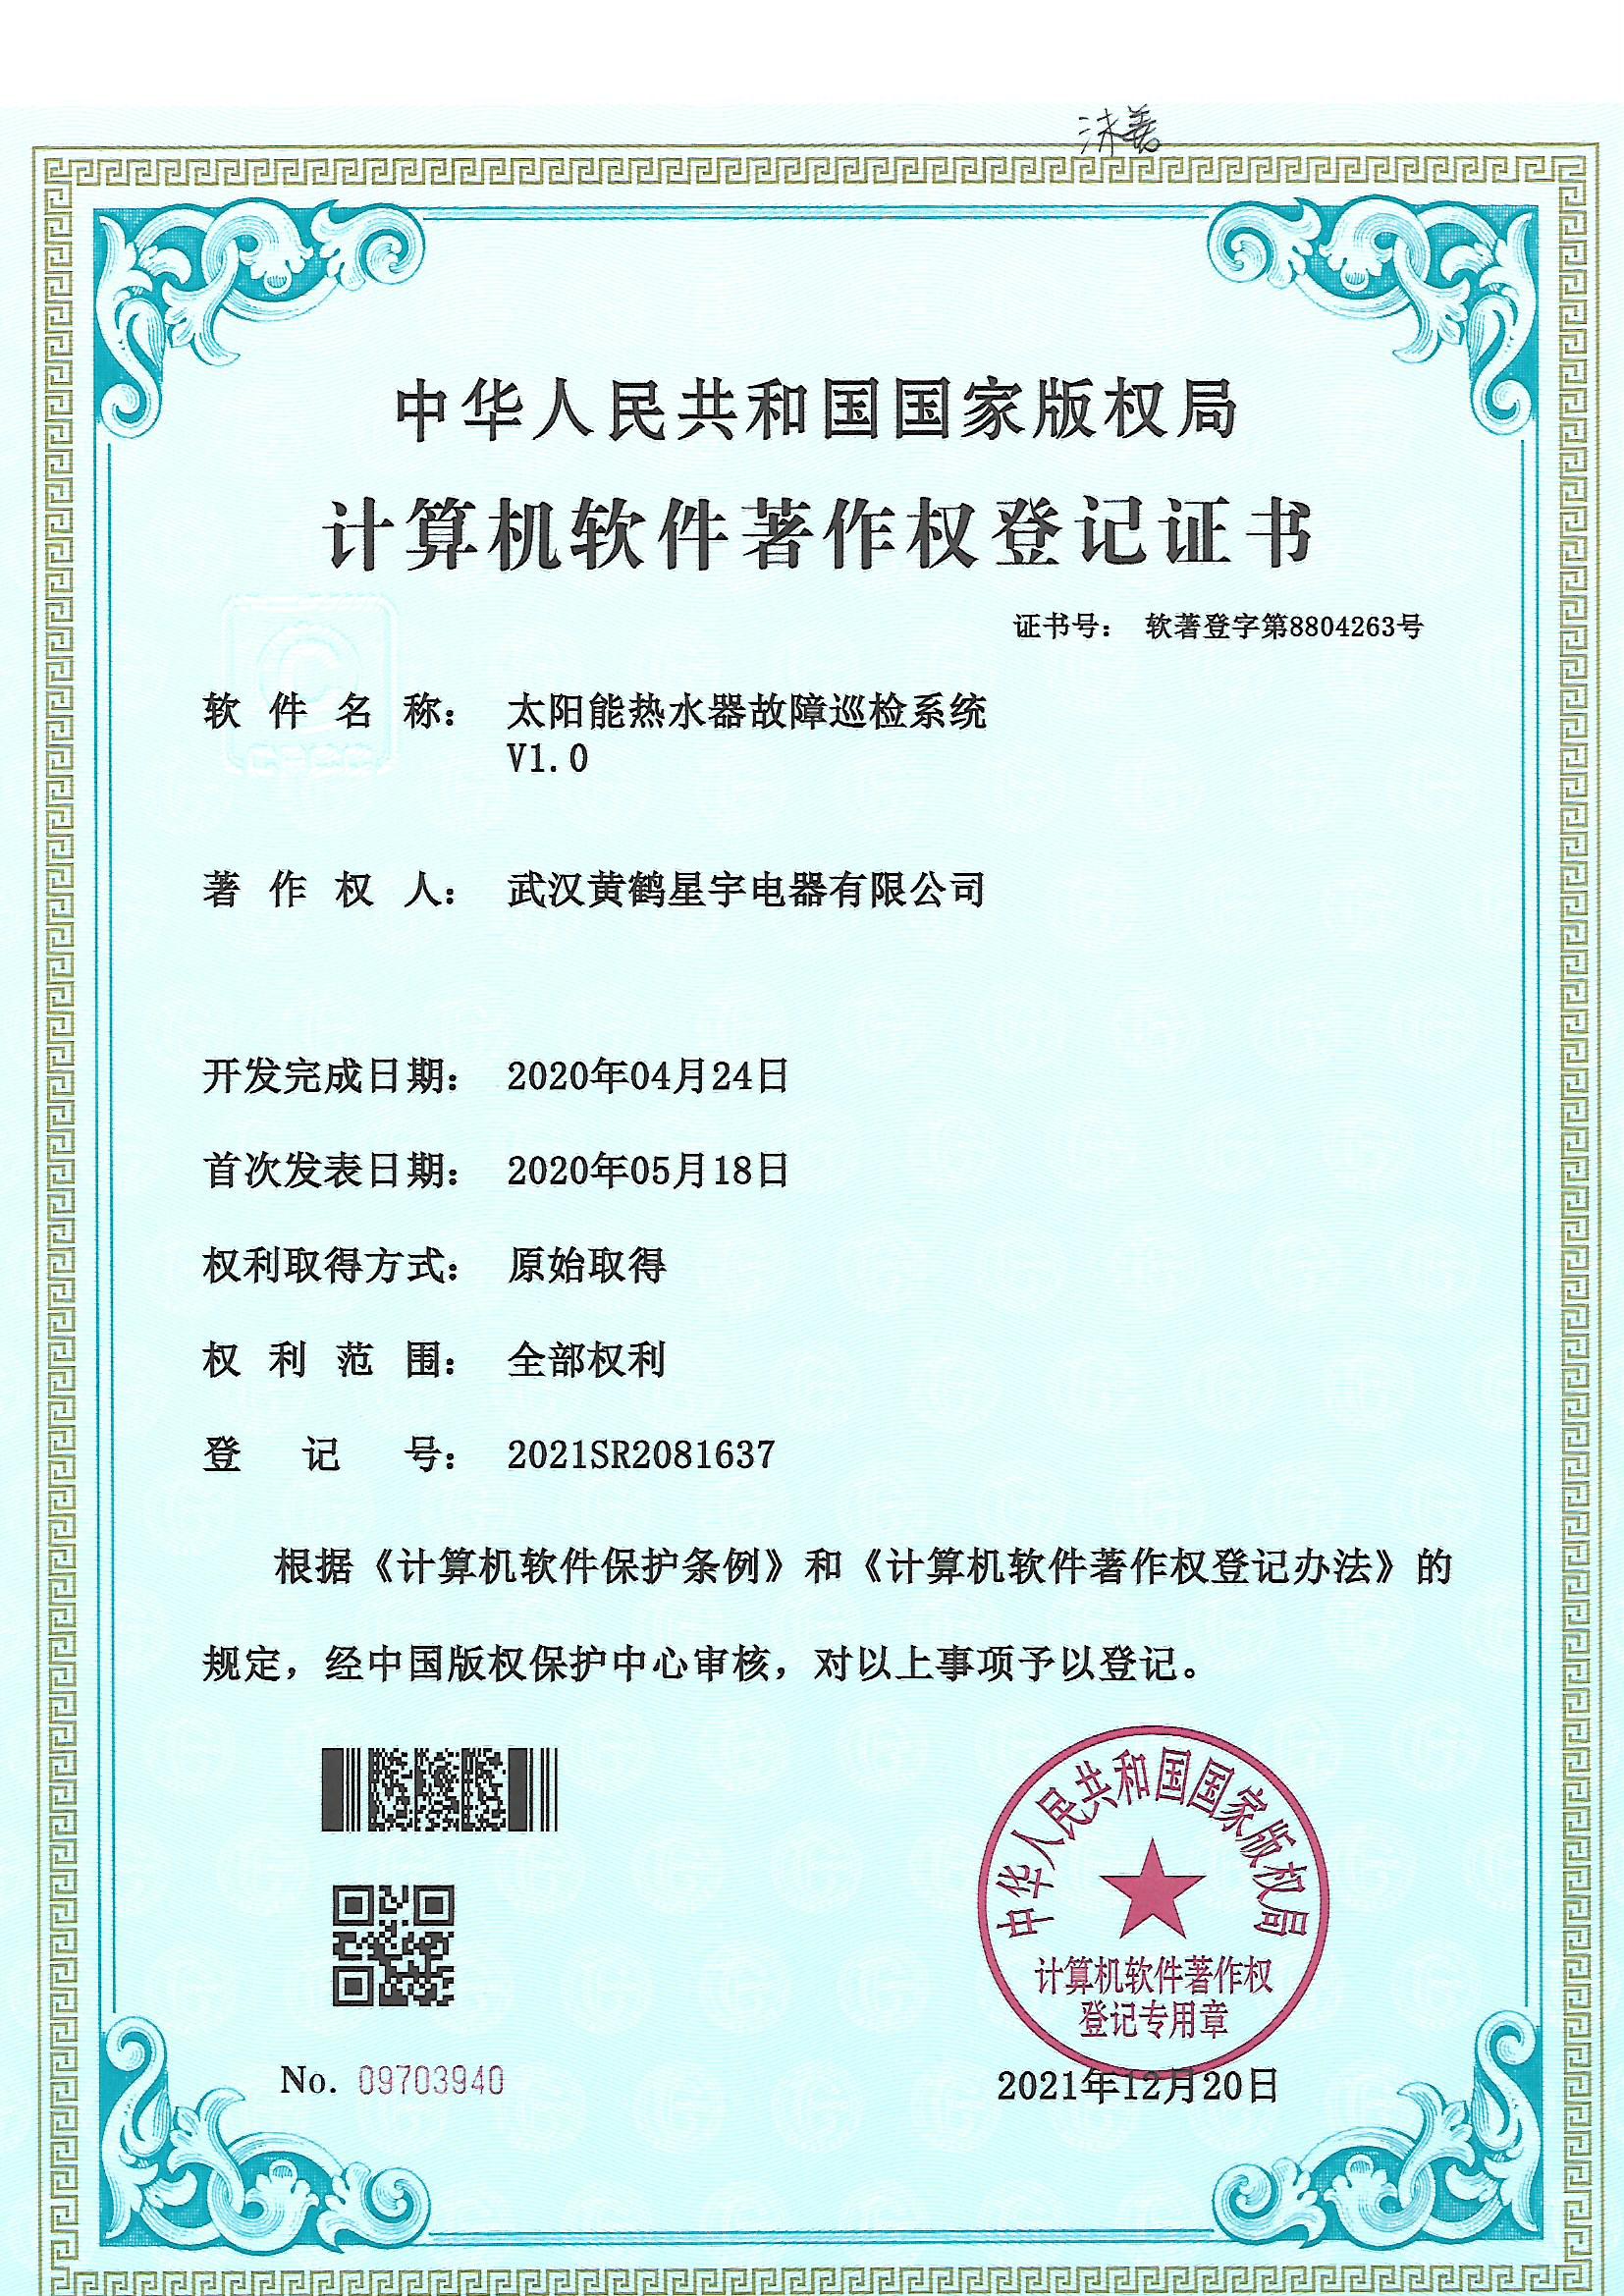 武汉玉米视频在线下载安装电器有限公司--玉米视频黄最老版计算机软件著作权登记证书